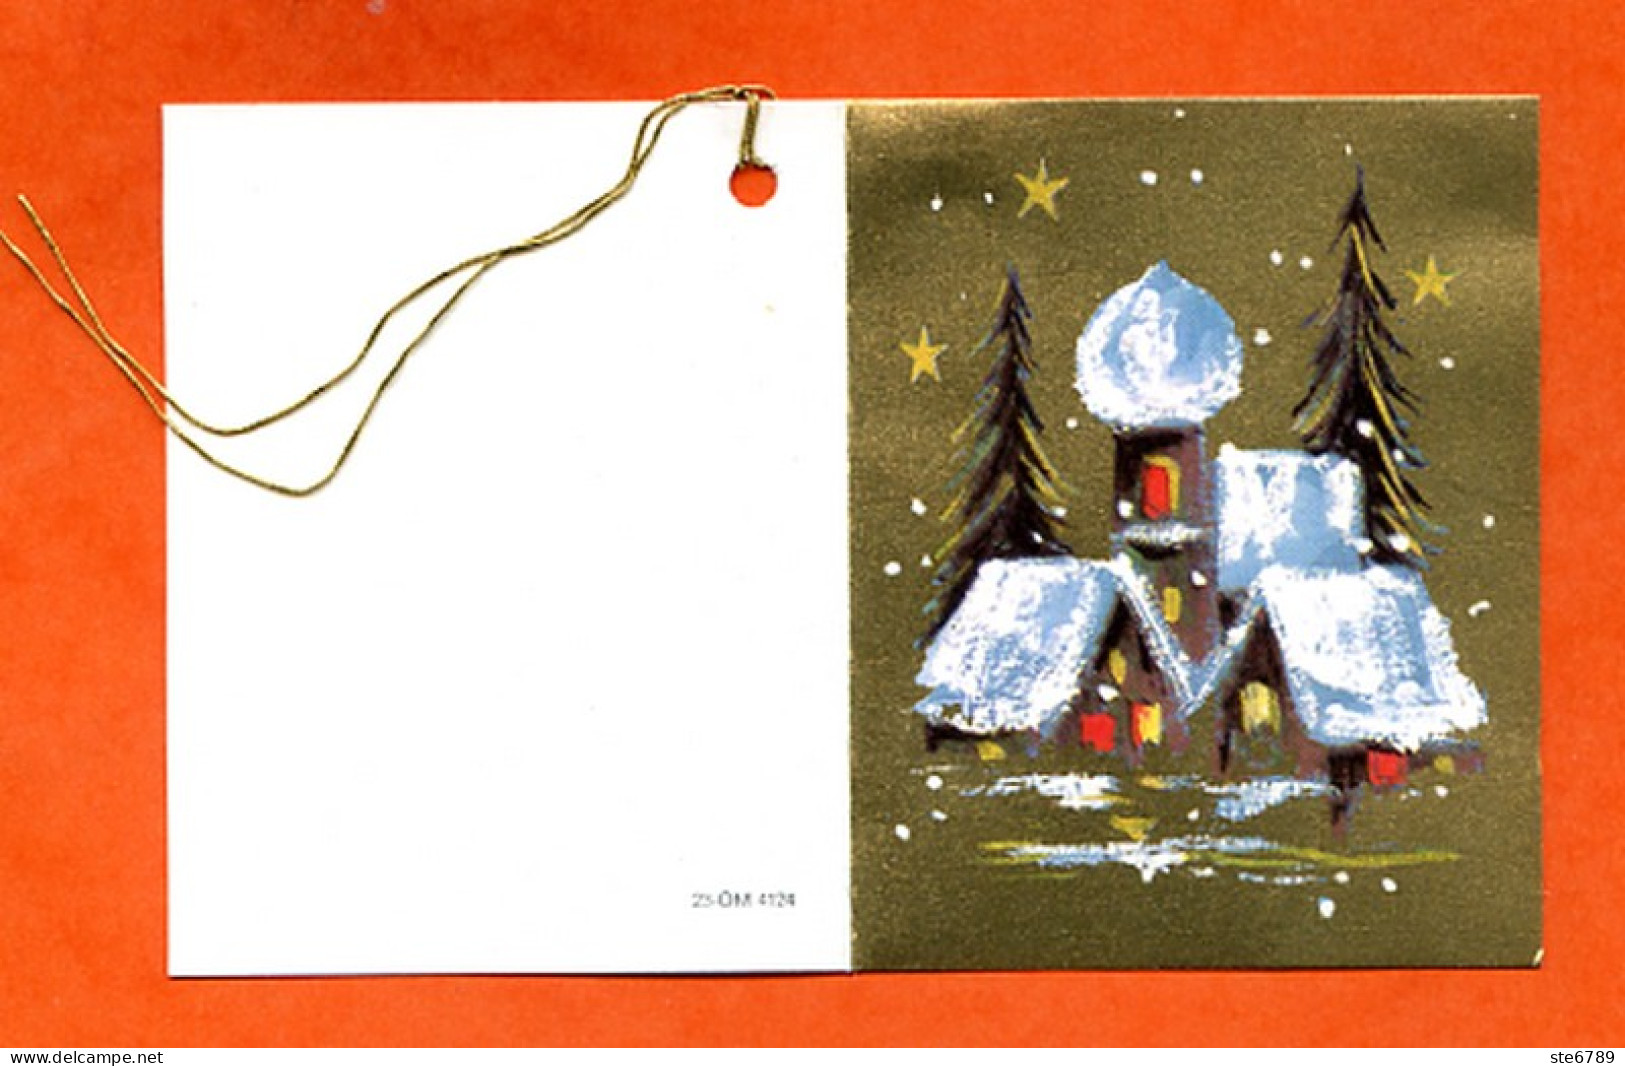 Etiquette Cadeau  Joyeux Noel Mini Carte Maisons Sapins 2 Pour Cadeaux - Father Xmas